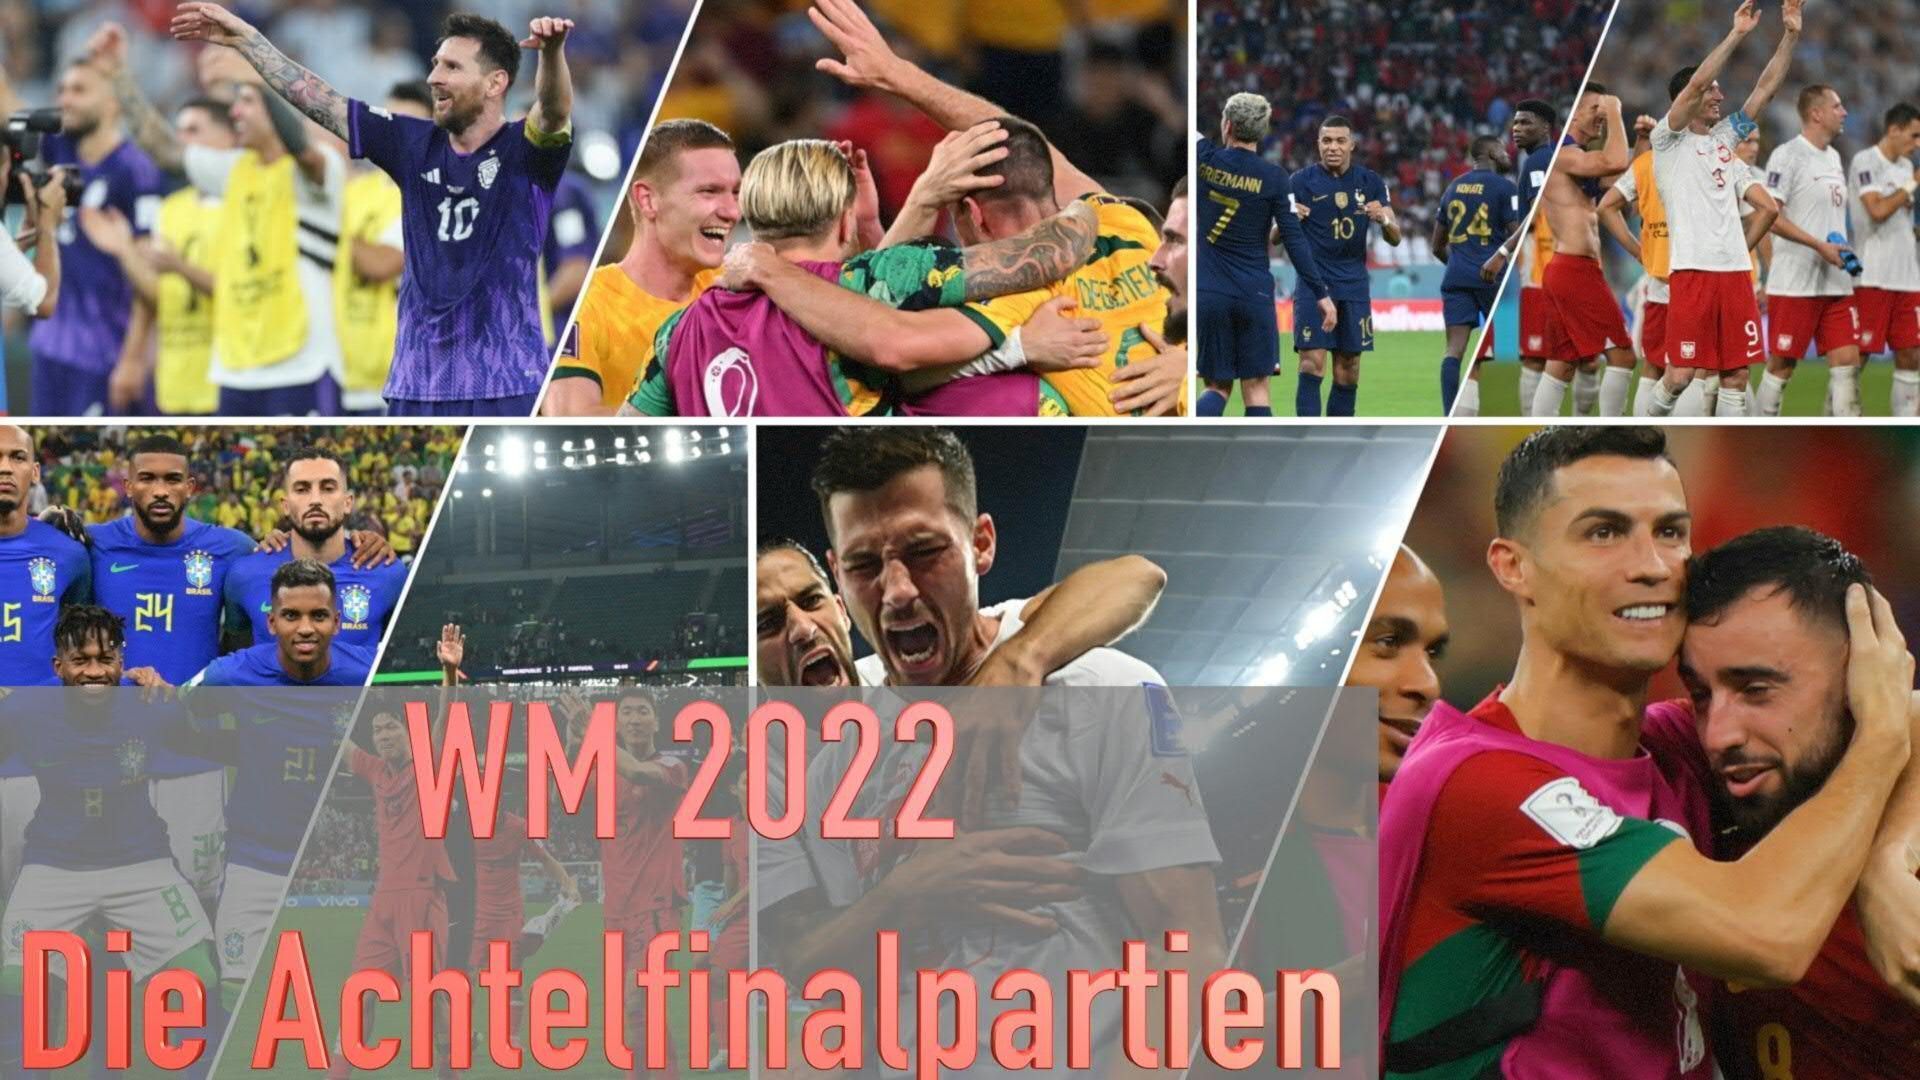 WM 2022: Die Achtelfinalpartien im Überblick